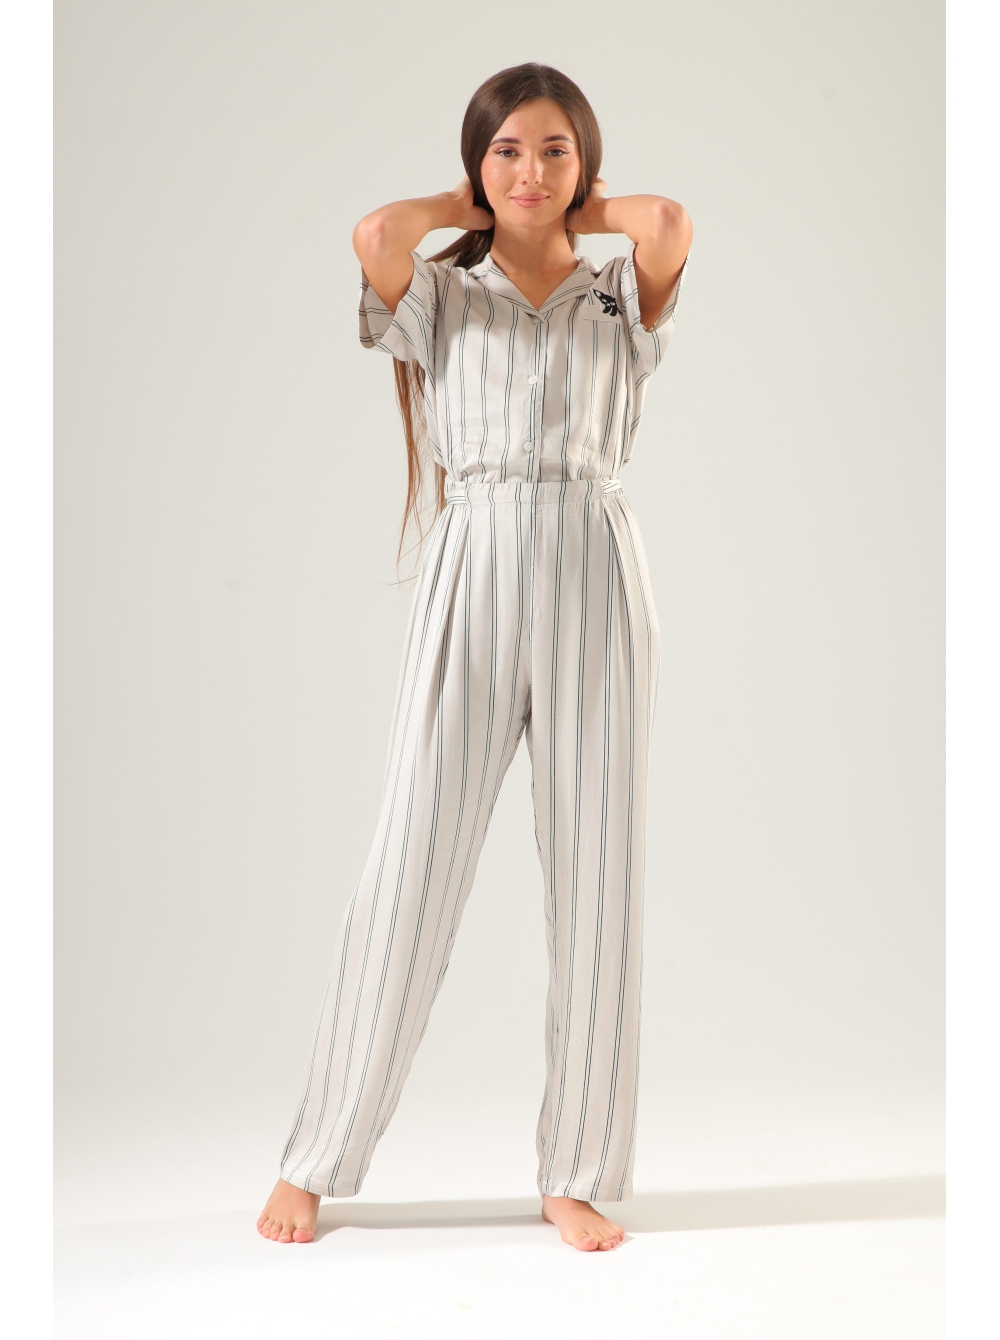 Пижама из вискозы. Белые пижамные вискозовые брюки домашние. Мужская пижама вискоза.